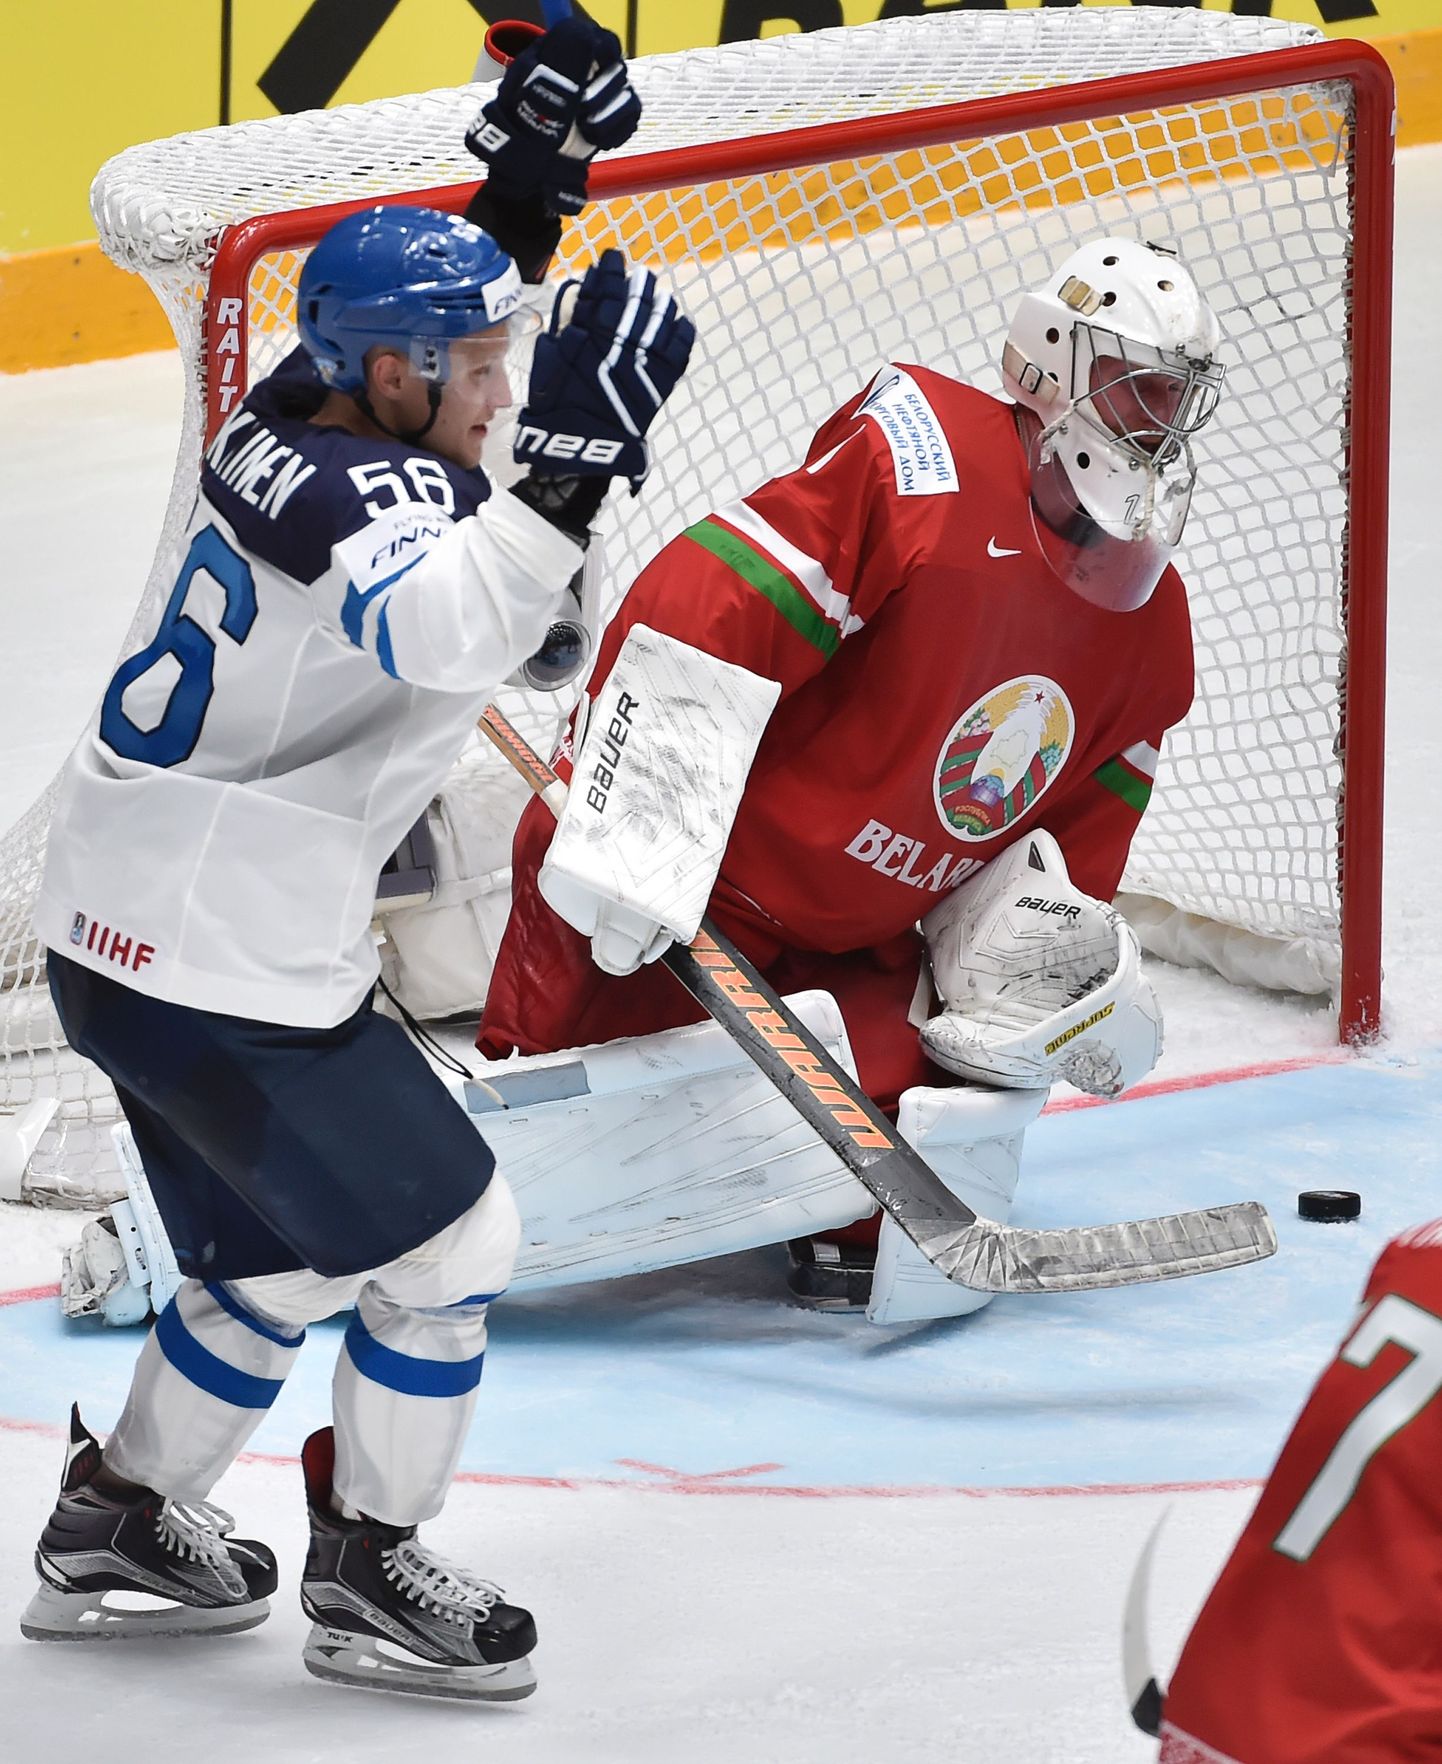 Soome jäähokimängija Teemu Pulkkinen (56) on KHLi punktitabeli tipus.